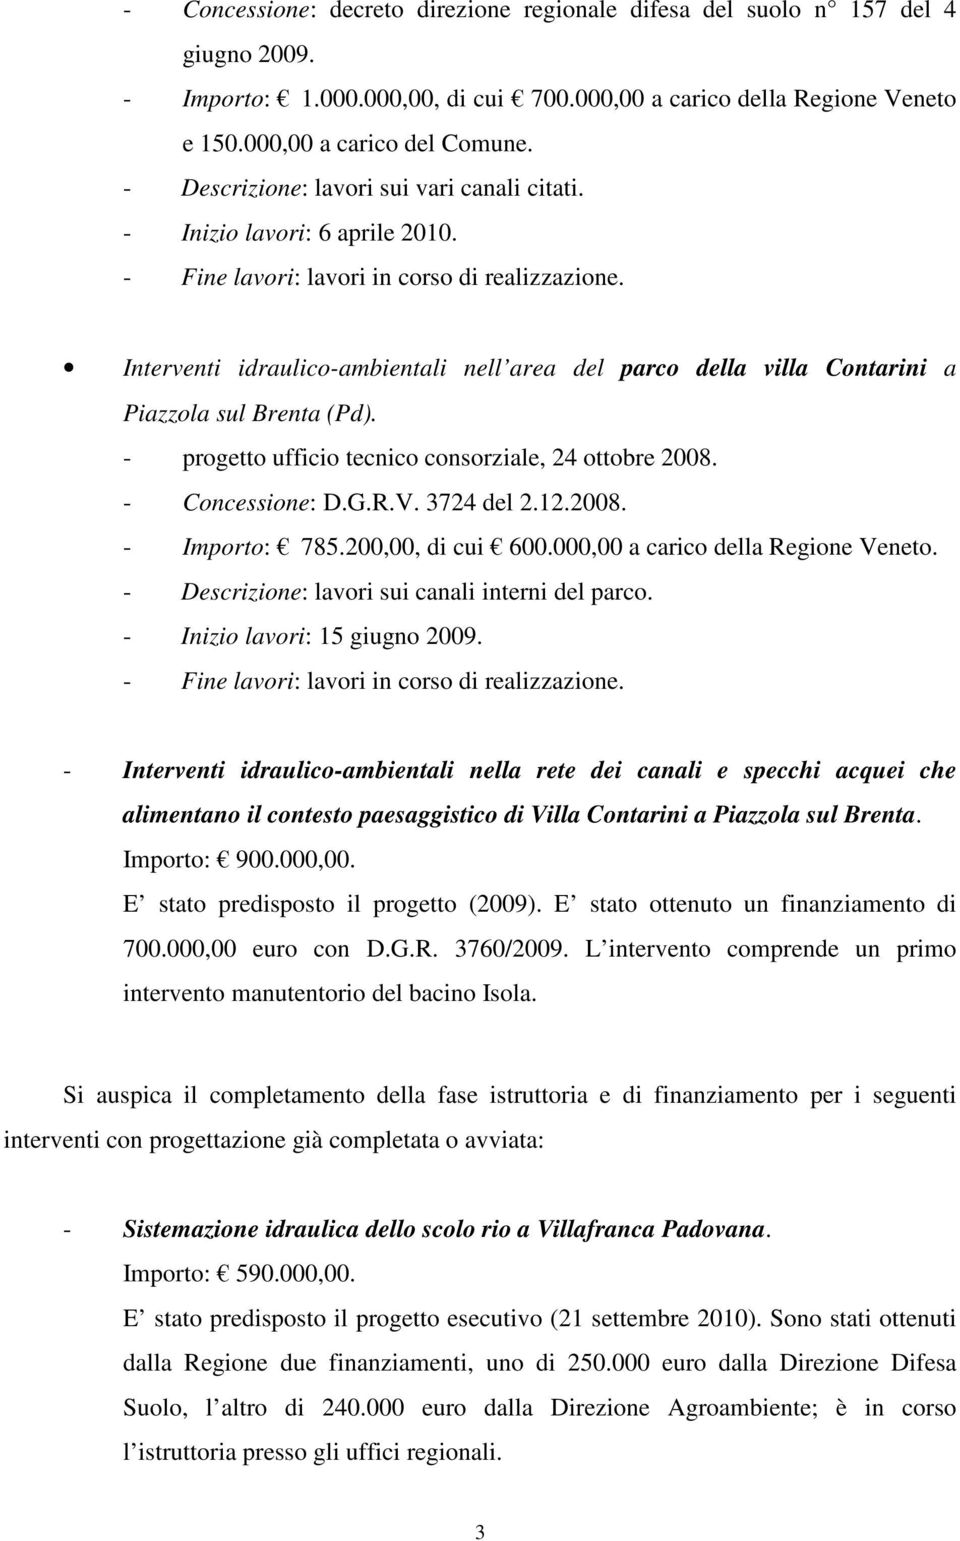 Interventi idraulico-ambientali nell area del parco della villa Contarini a Piazzola sul Brenta (Pd). - progetto ufficio tecnico consorziale, 24 ottobre 2008. - Concessione: D.G.R.V. 3724 del 2.12.